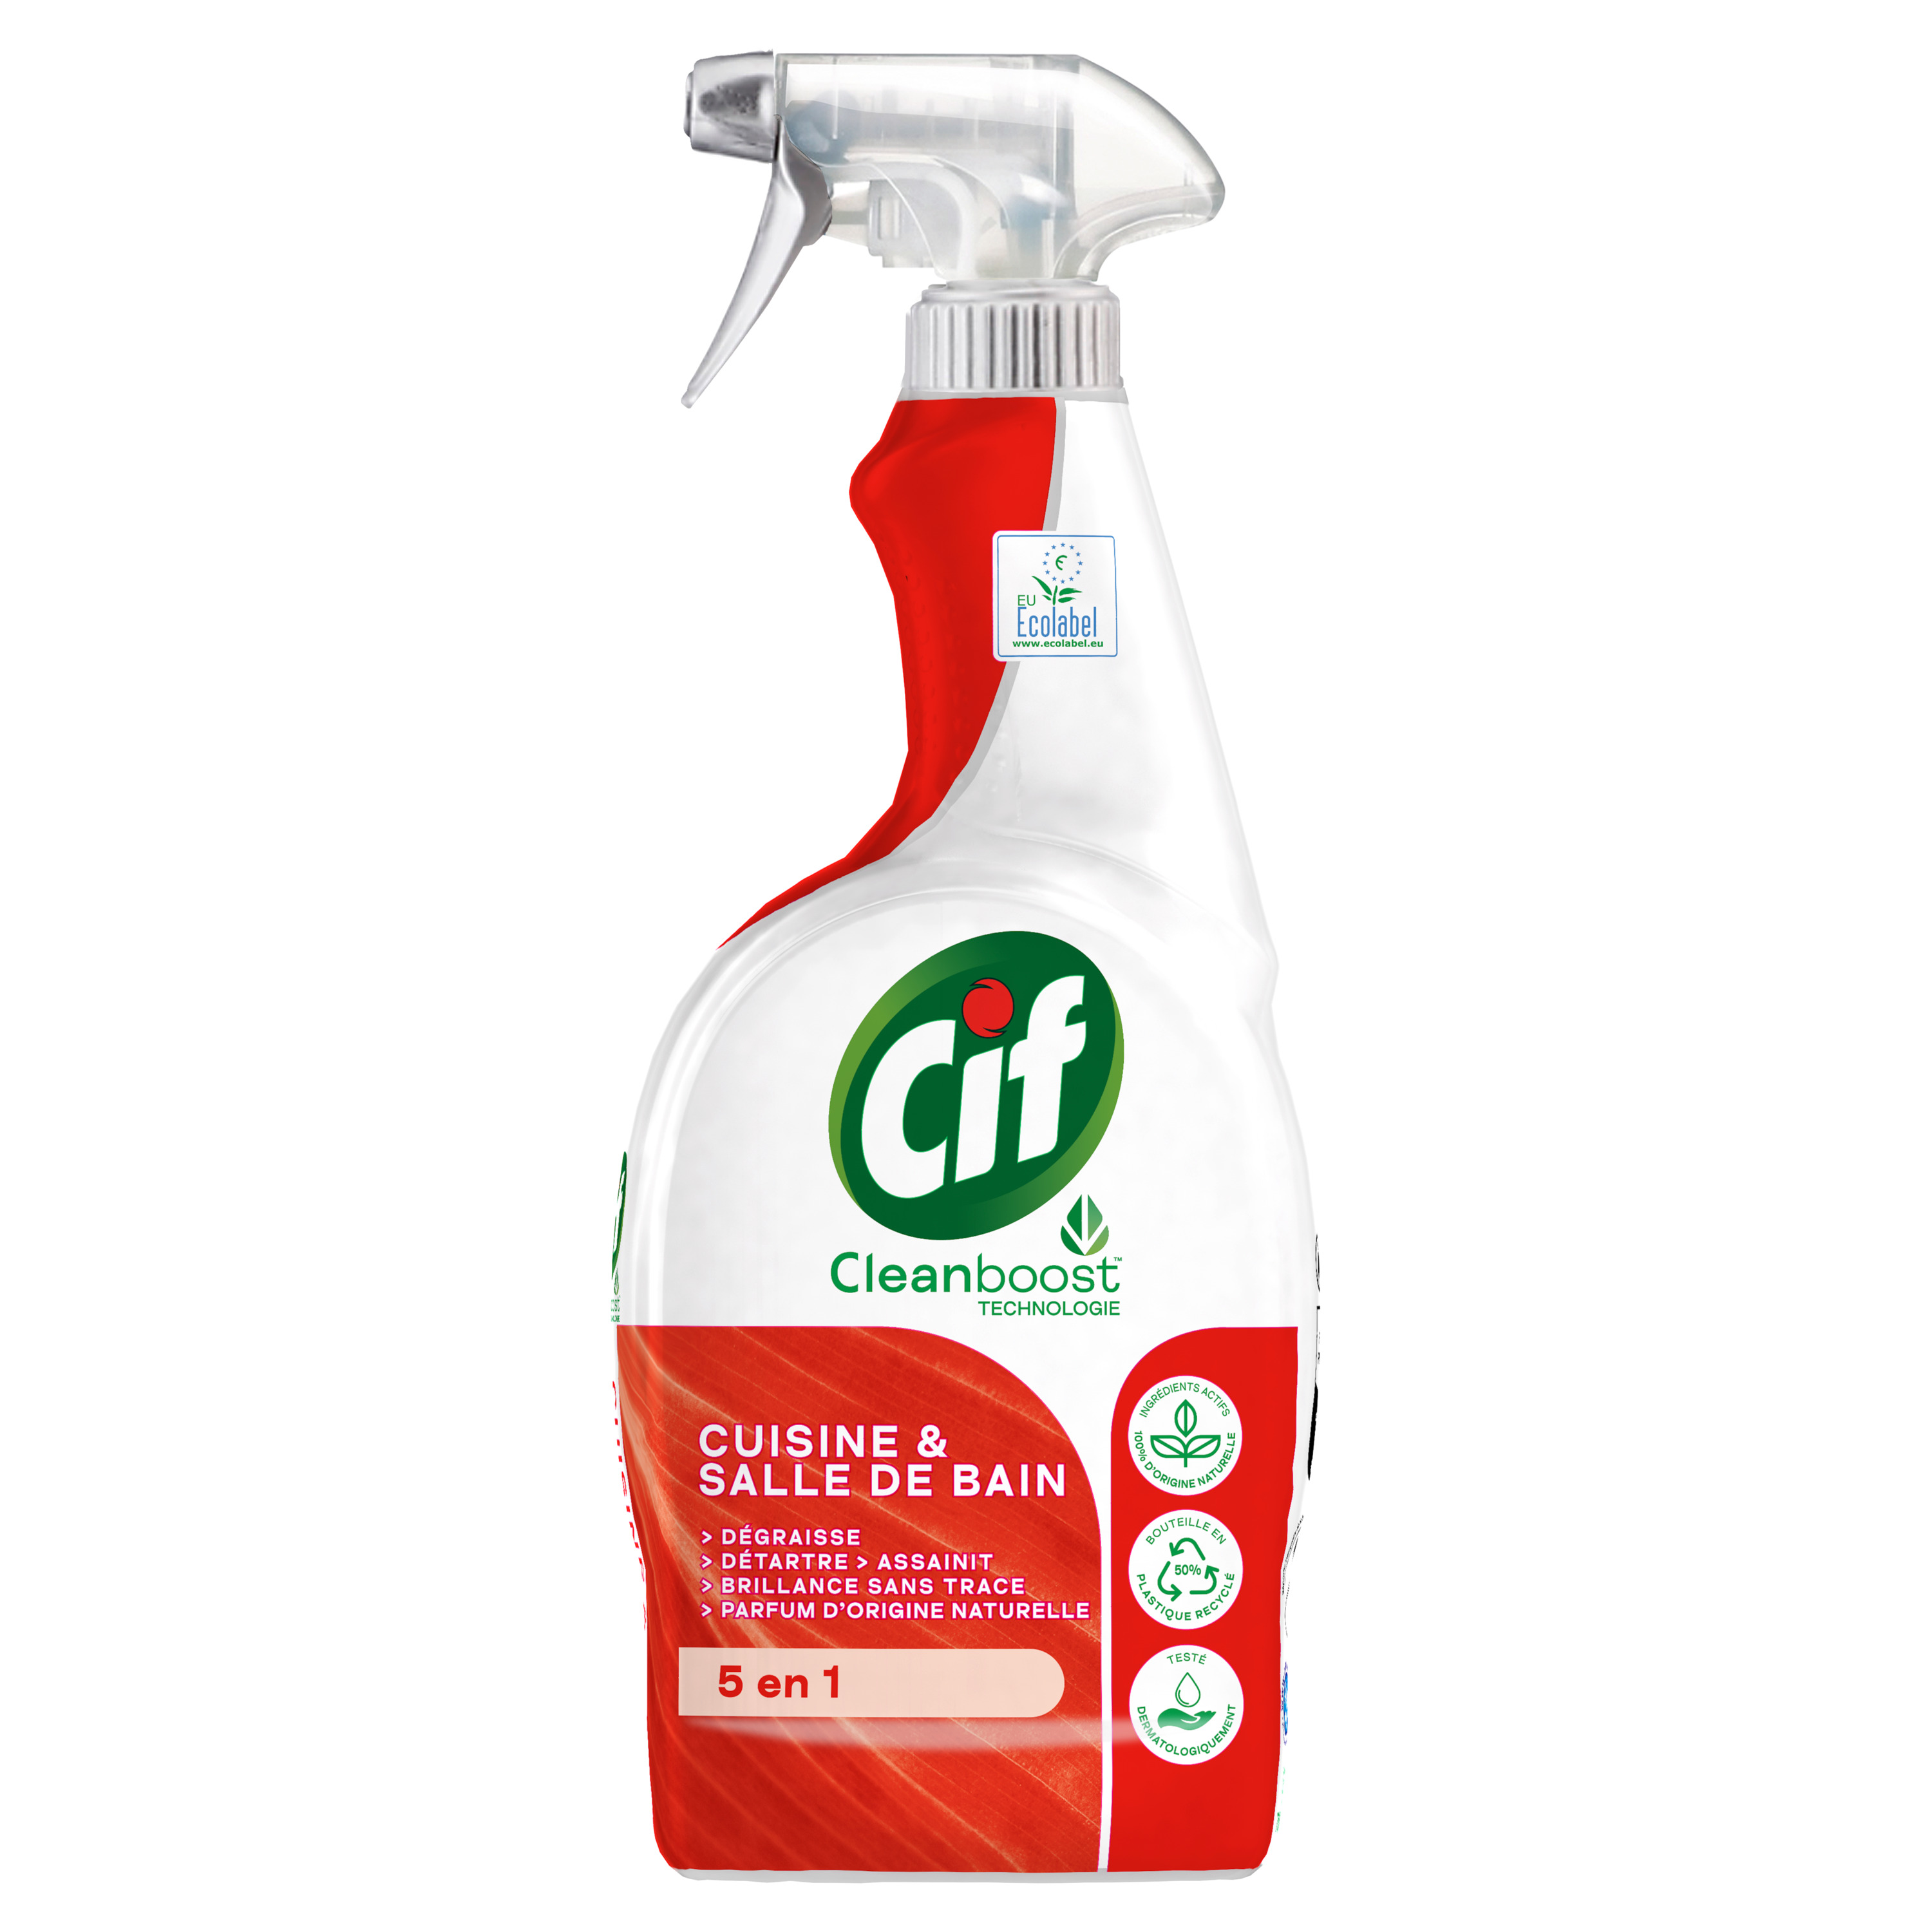 CIF Spray nettoyant avec javel efficacité et brillance 750ml pas cher 